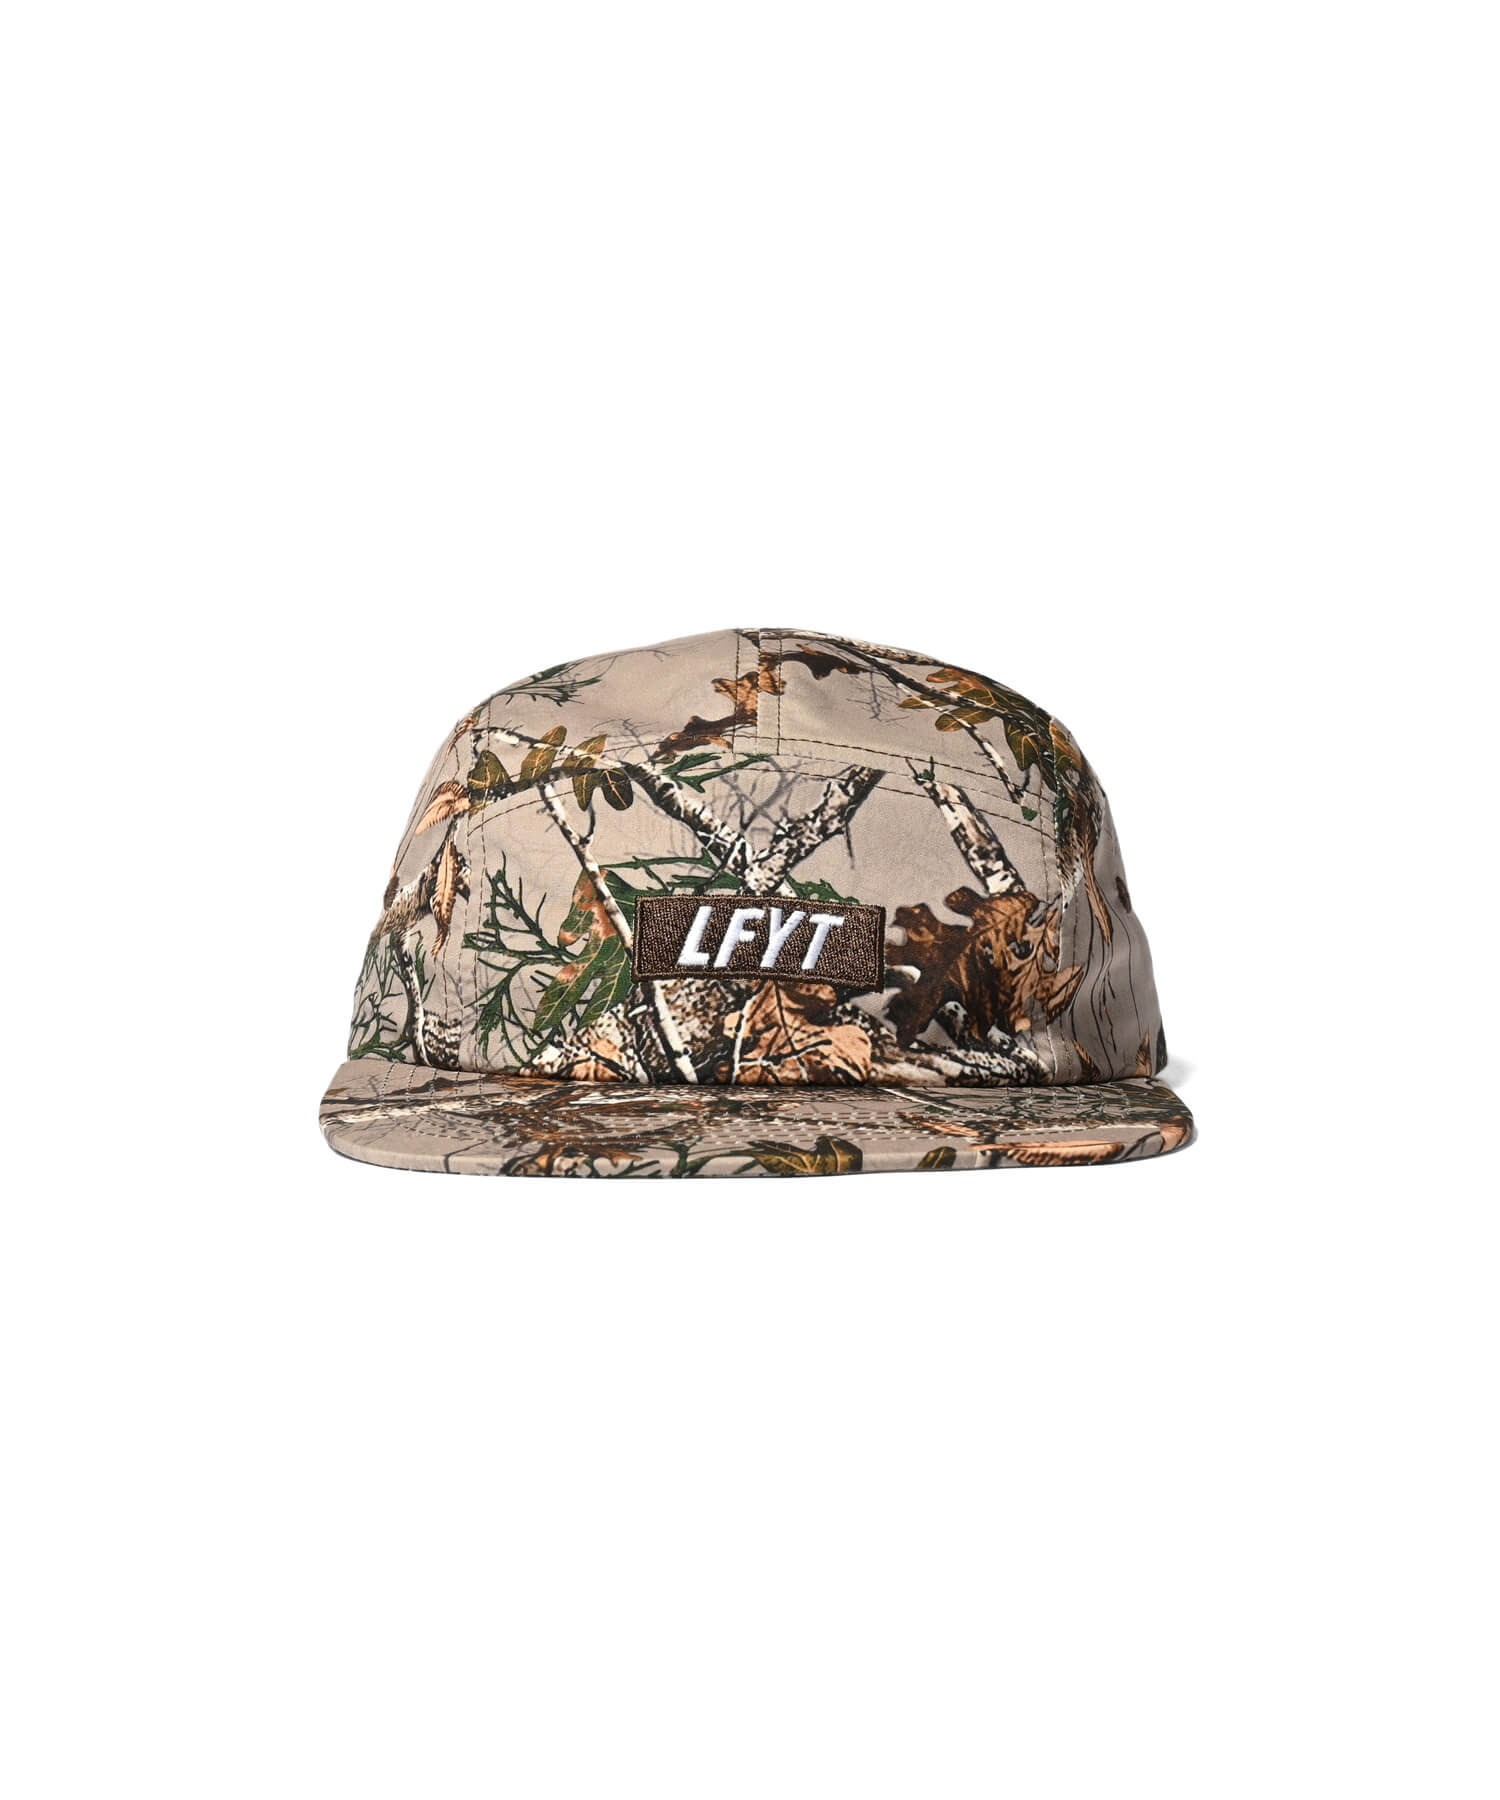 LFYT - LFYT BOX LOGO CAMP CAP LA231410